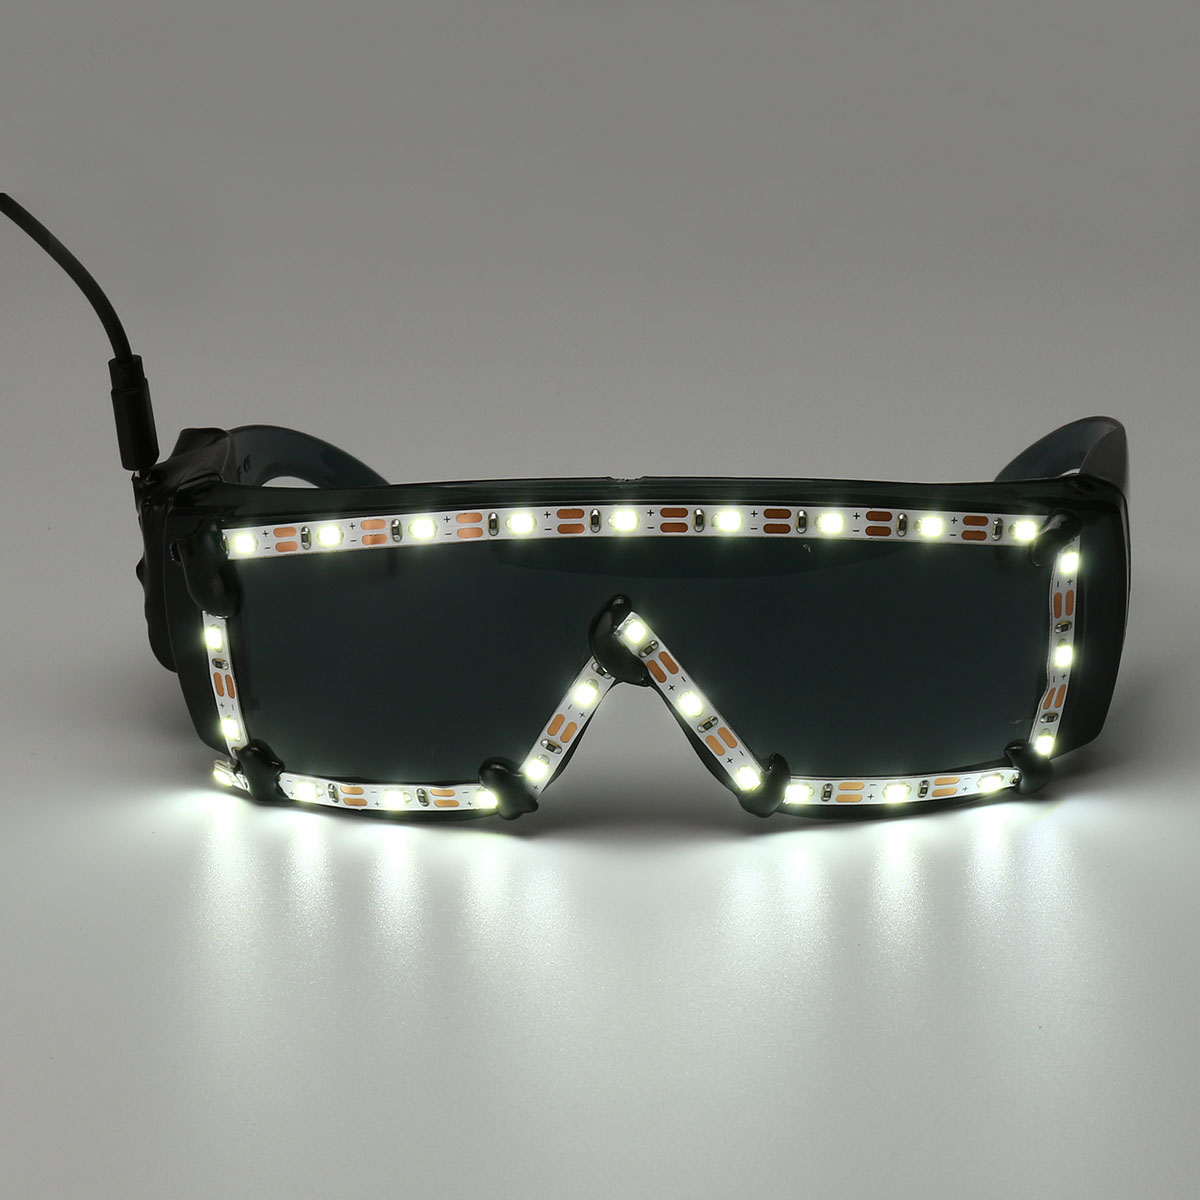 White-LED-Glasses-Light-Up-Glow-Sunglasses-Eyewear-Shades-Nightclub-Party-Decor-1525653-3